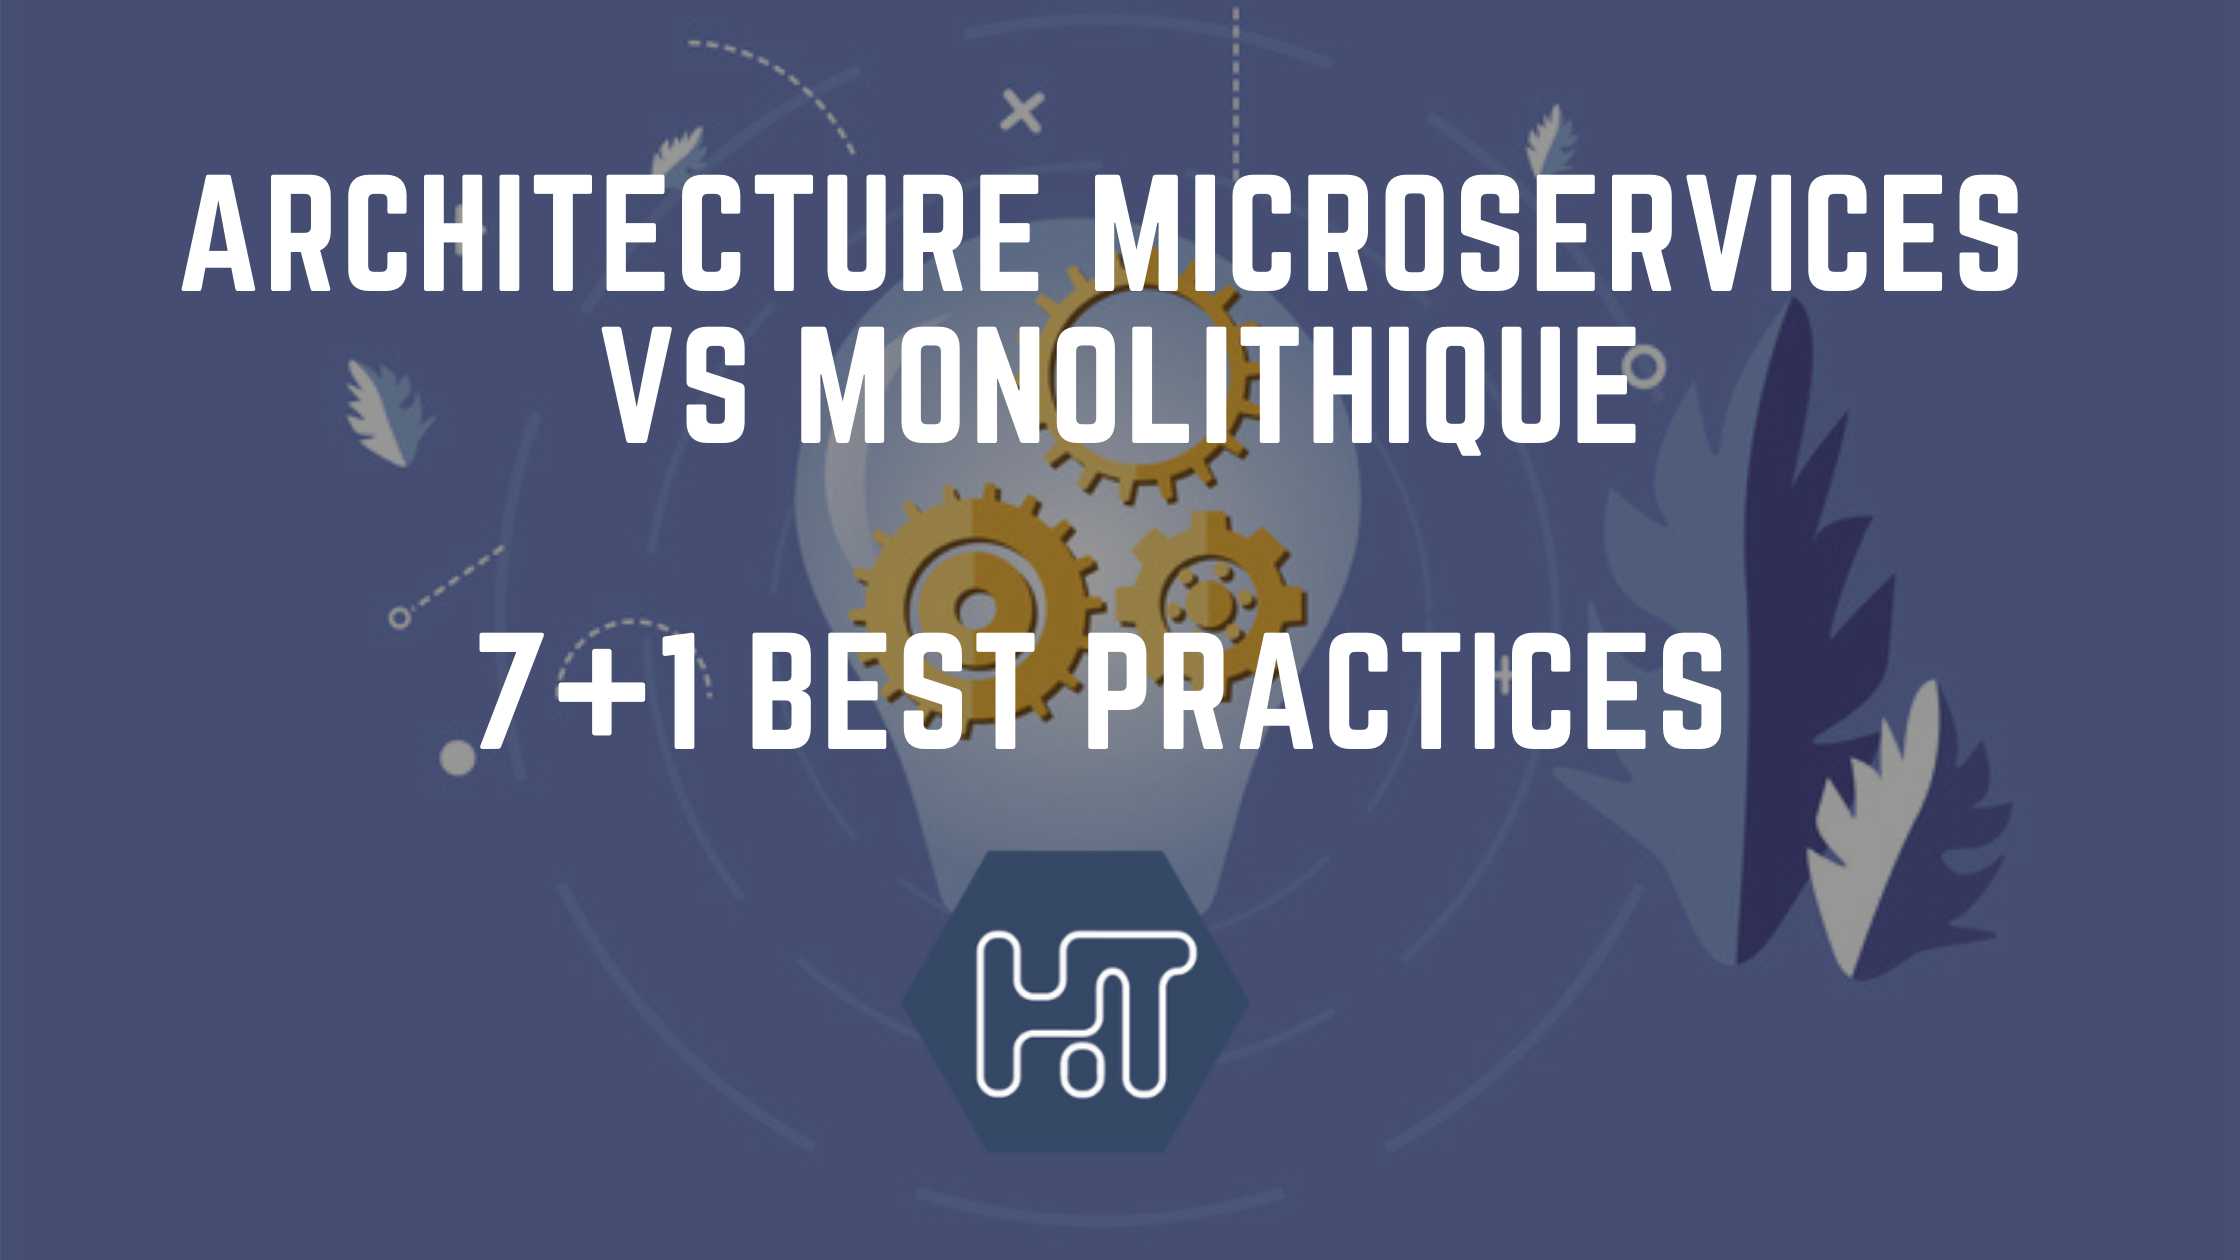 Architecture microservices, la solution pour éviter les pièges du monolithique ?